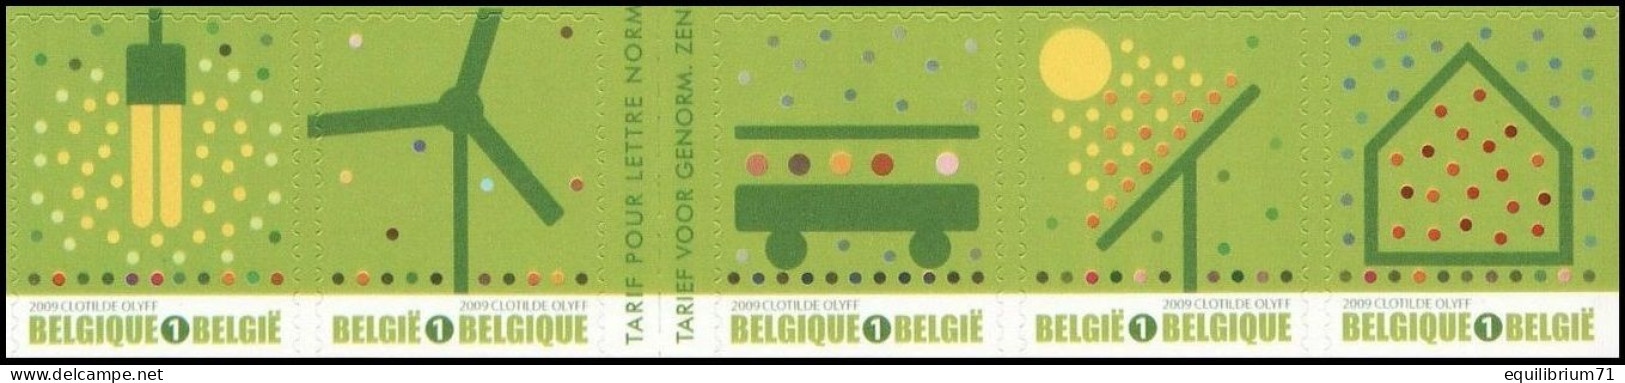 B104/C104**(3911-14 + 3915a) - Timbres Verts/Groene Zegels/Grüne Briefmarken - 1/2 Carnet/1/2 Boekje - BELGIQUE / BELGIË - Ongebruikt